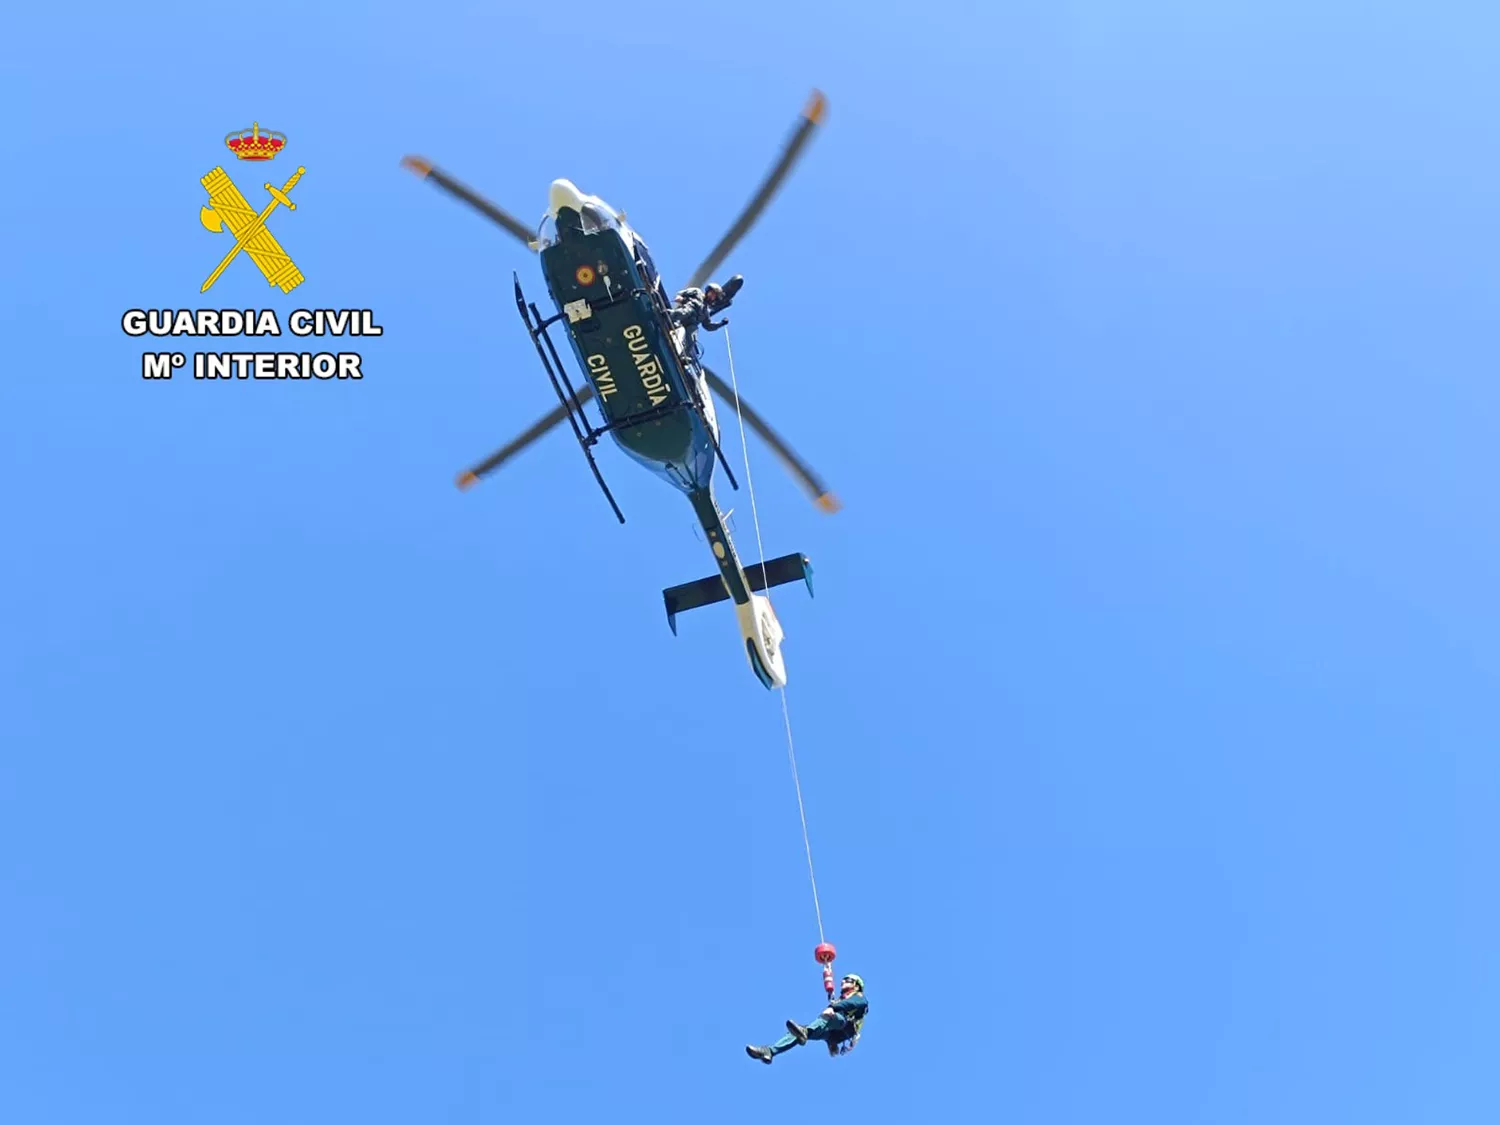 Comienza a operar en la provincia de León el nuevo helicóptero de la Guardia Civil que reducirá “significativamente” los tiempos de en rescates y búsqueda de desaparecidos